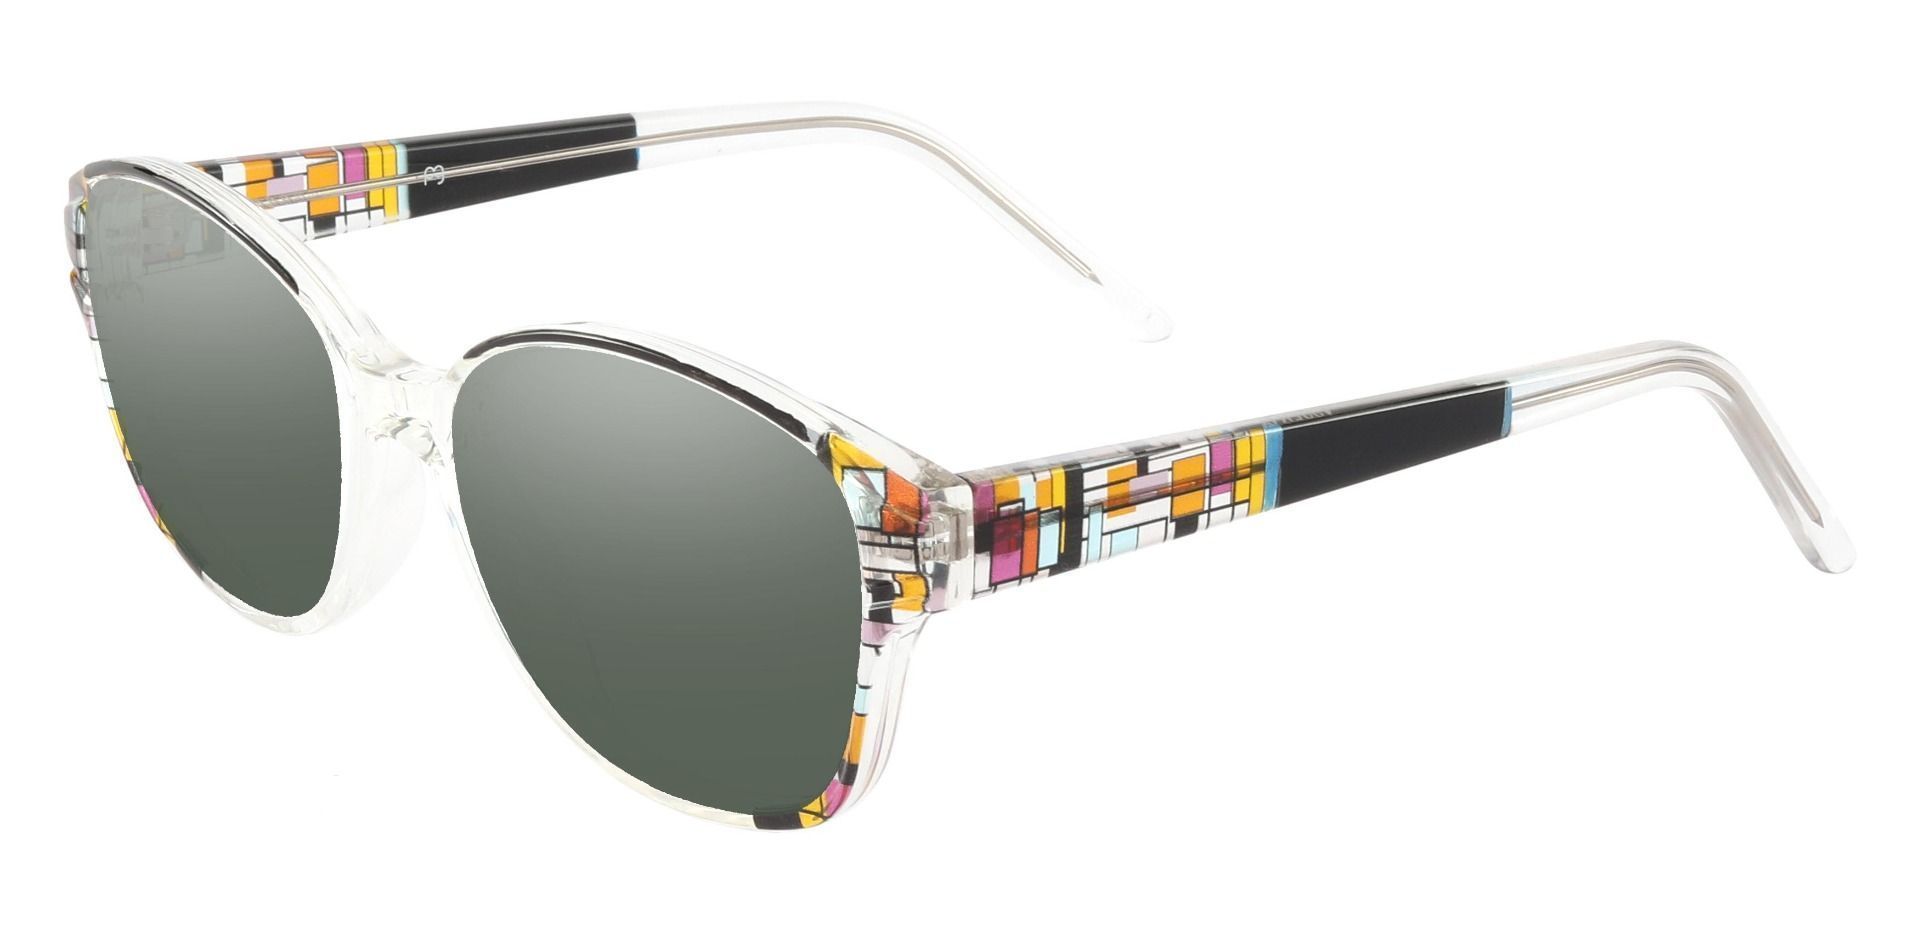 Moira Oval Progressive Sunglasses - Black Frame With Green Lenses